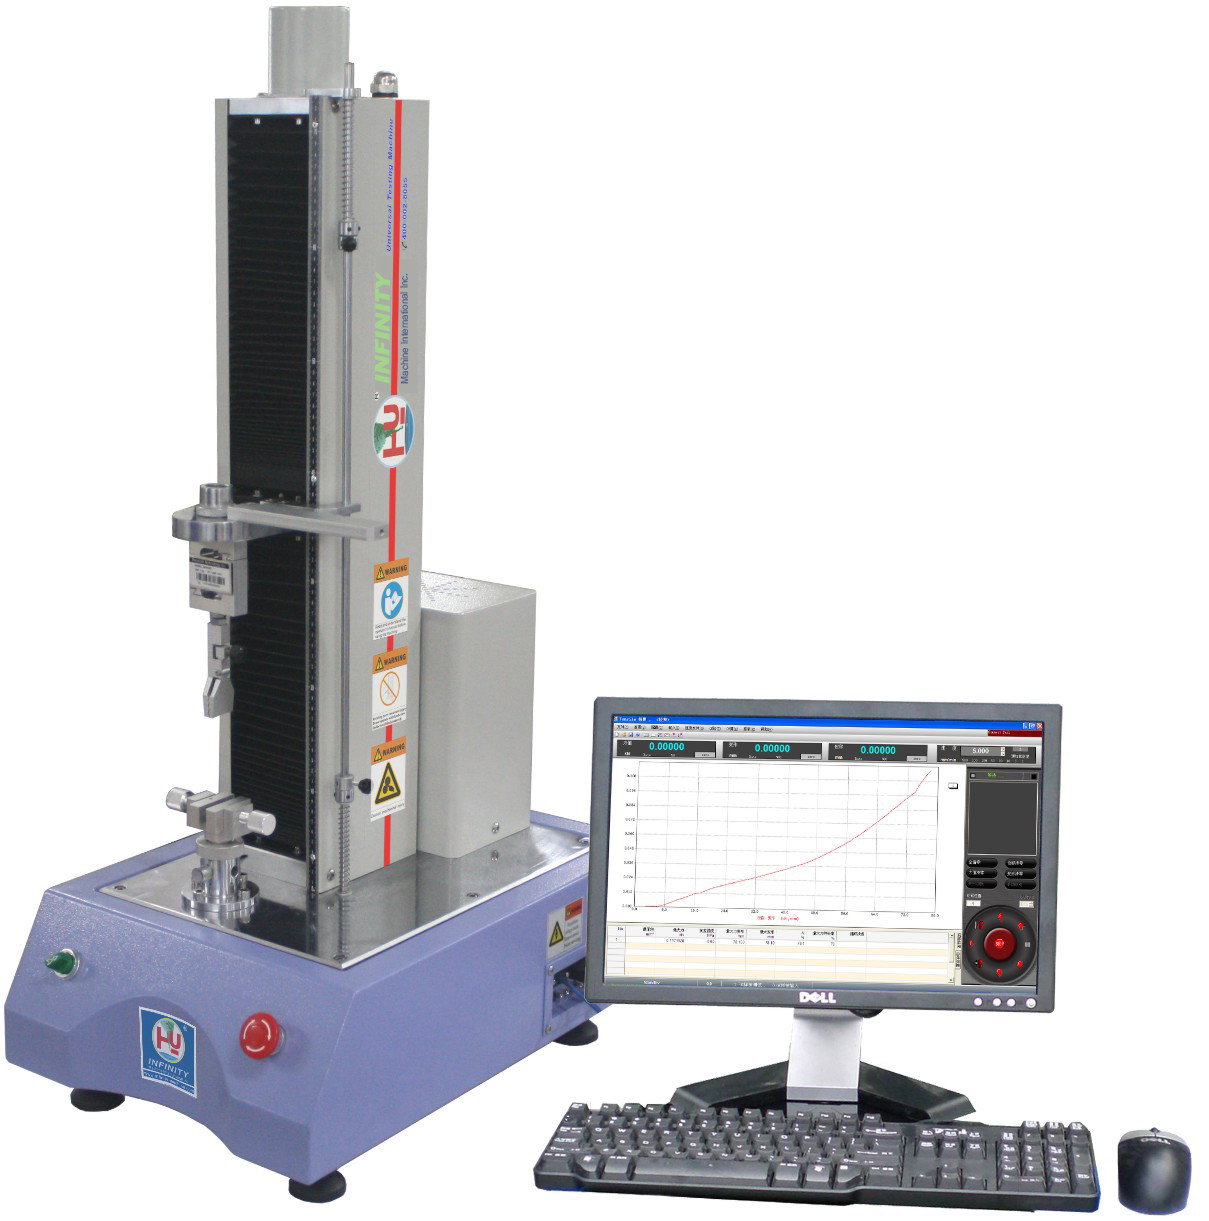 آلة الاختبار الإلكترونية لضغط الجهاز للاختبار في الانحناء والتحكم بالحاسوب لضغط الجهاز باستخدام الاختبار العالمي